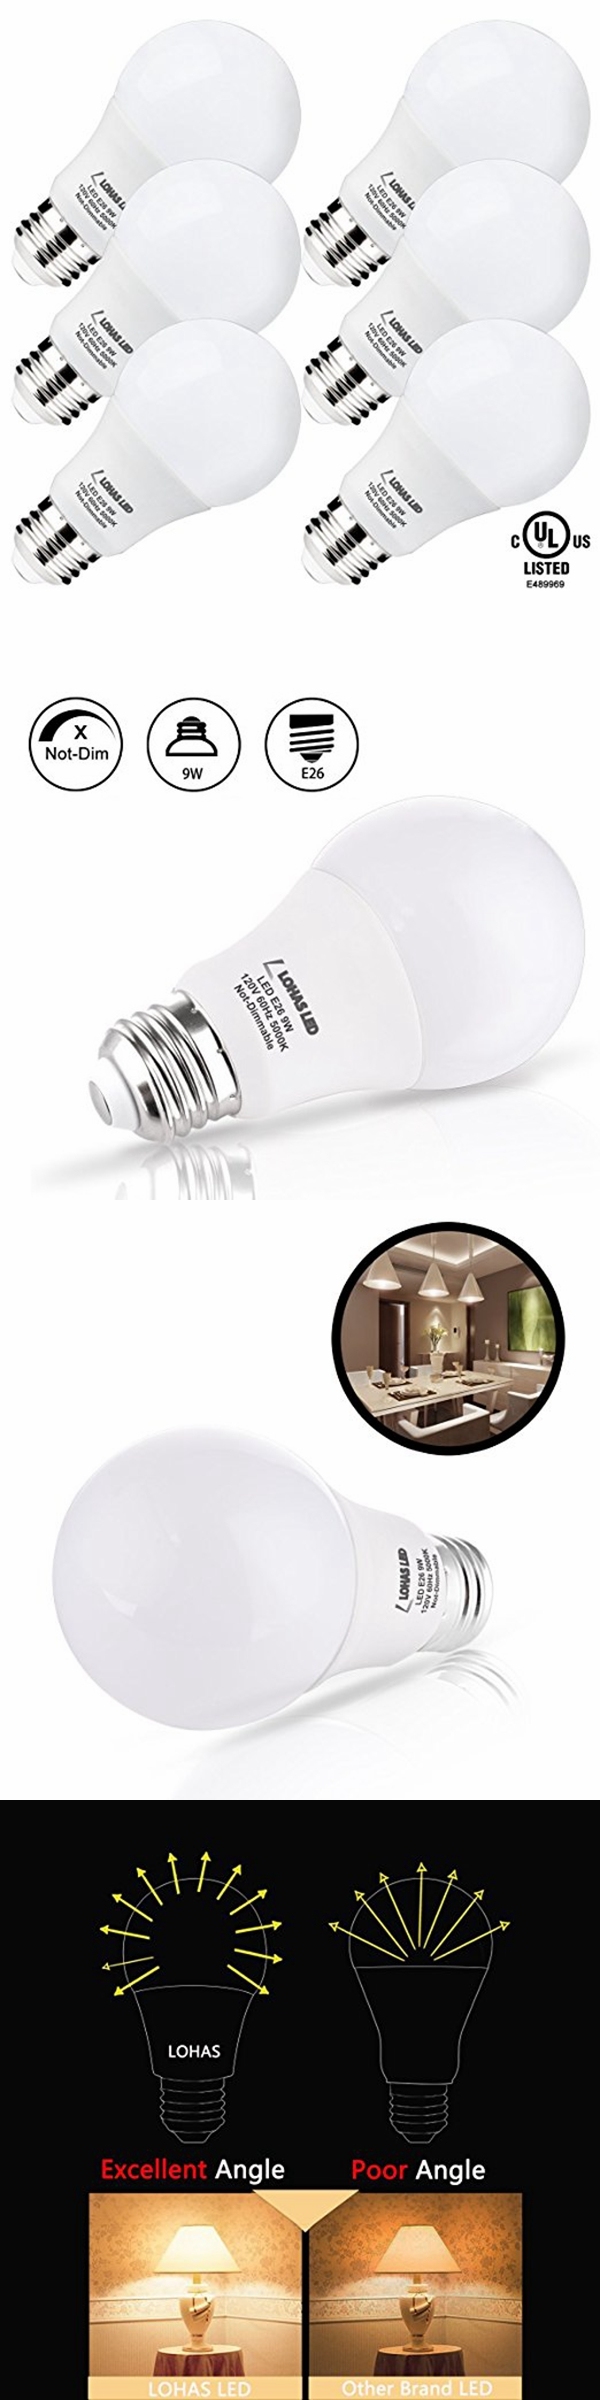 New LED Light Bulbs 60 Watt Equivalent (UL Listed) 5000K Daylight White 9W LED Bulbs for Home Lighting